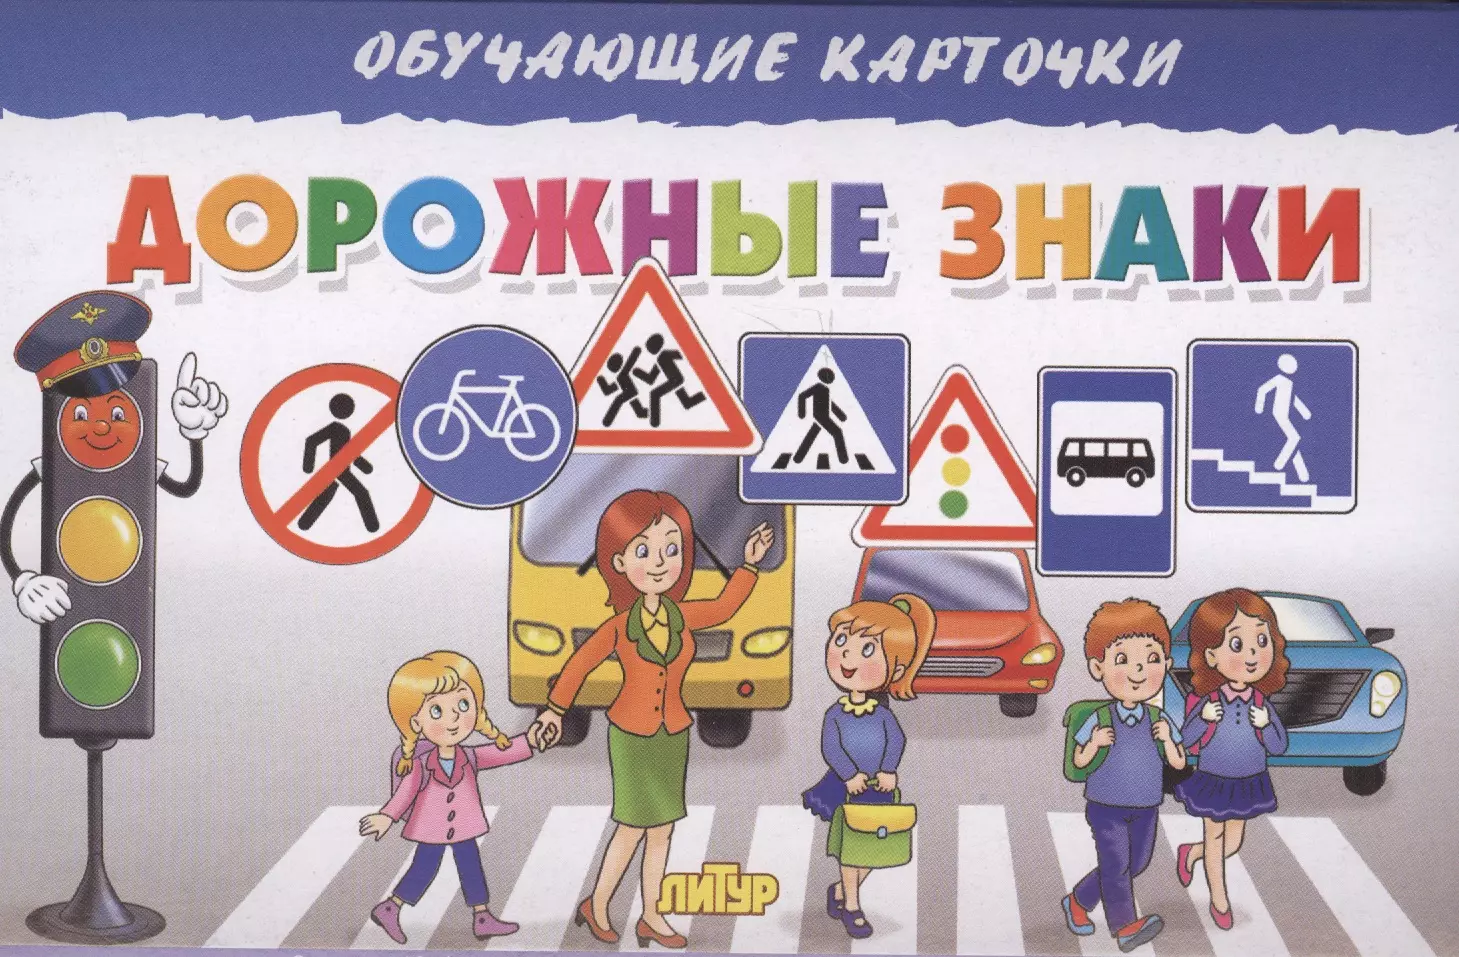 Визитка пдд. Дорожные знаки длядете. Дорожные знаки для детей. Дороныезнаки для детей. Иллюстрации дорожных знаков для детей.